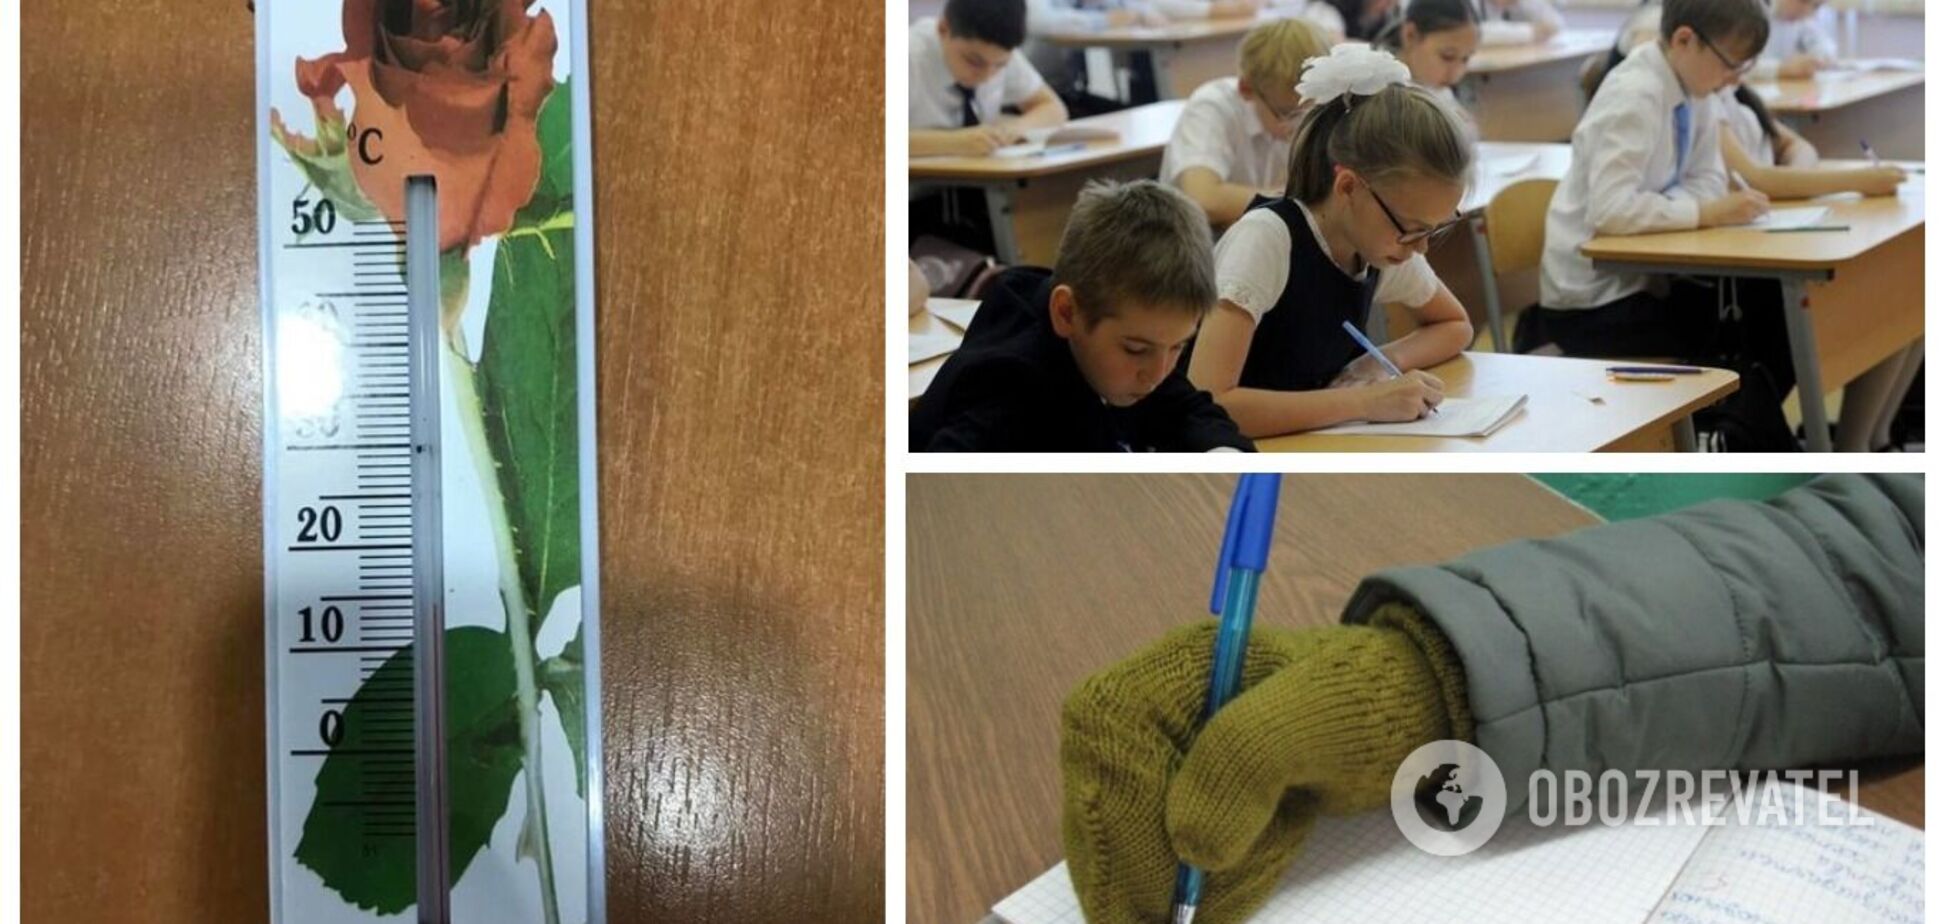 Дети мерзнут в школах, родители возмущены: жалобы на отопление доносятся из всех регионов Украины